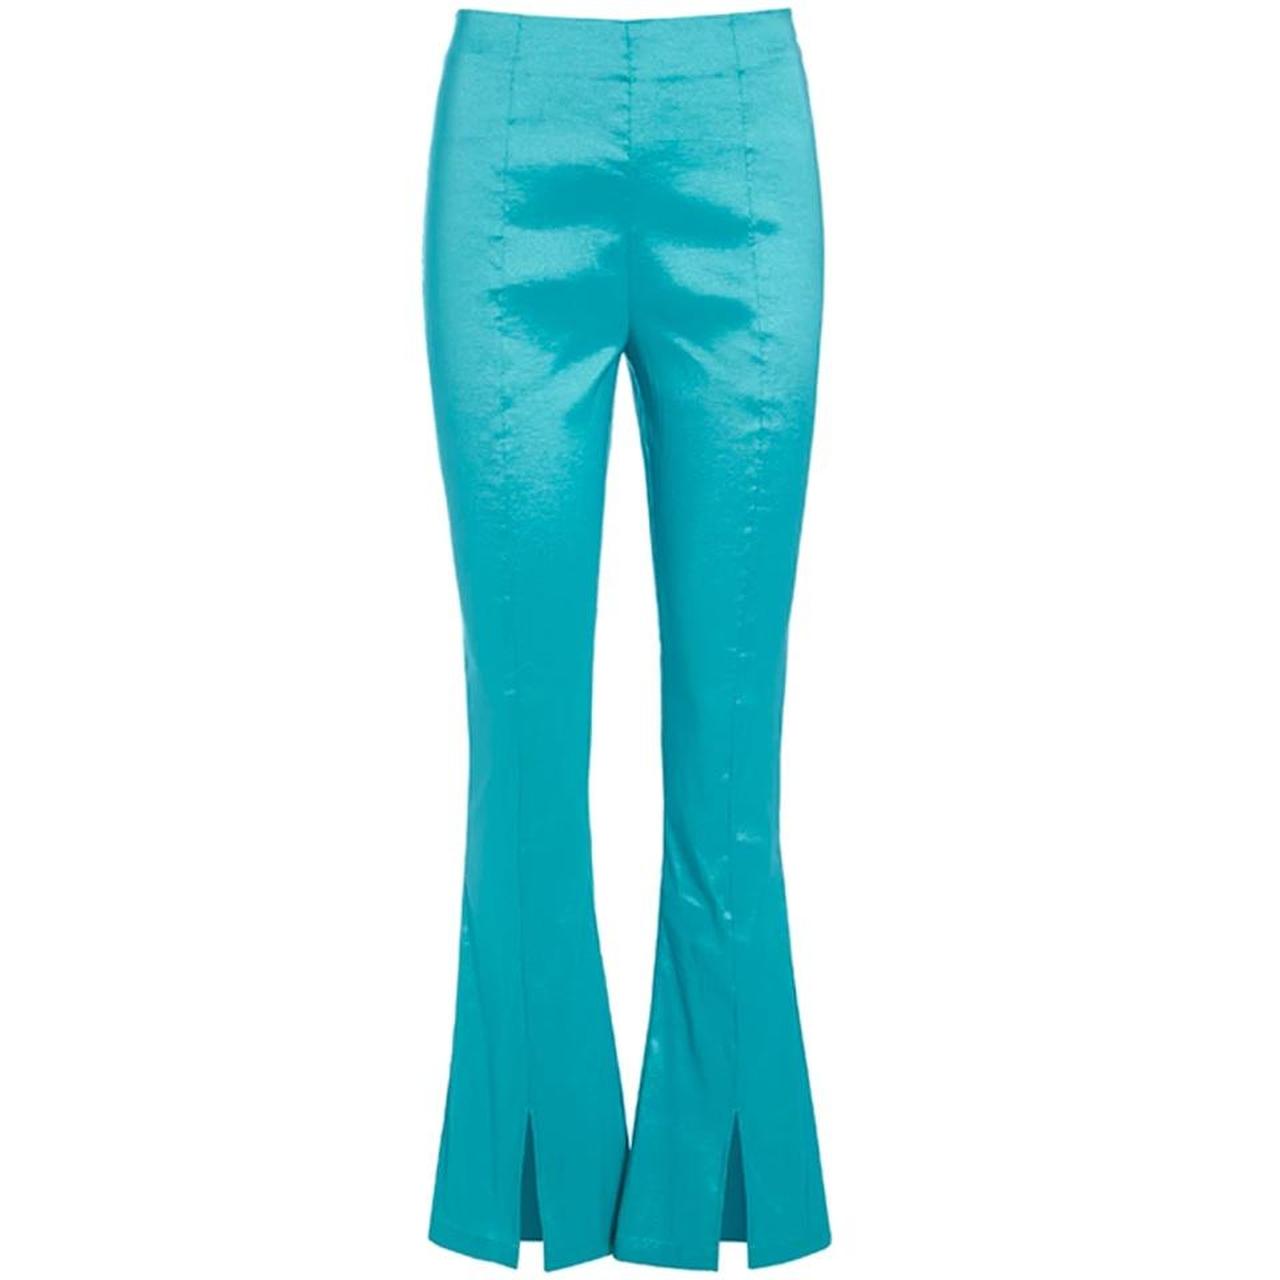 Hosbjerg Women's Blue Trousers (2)